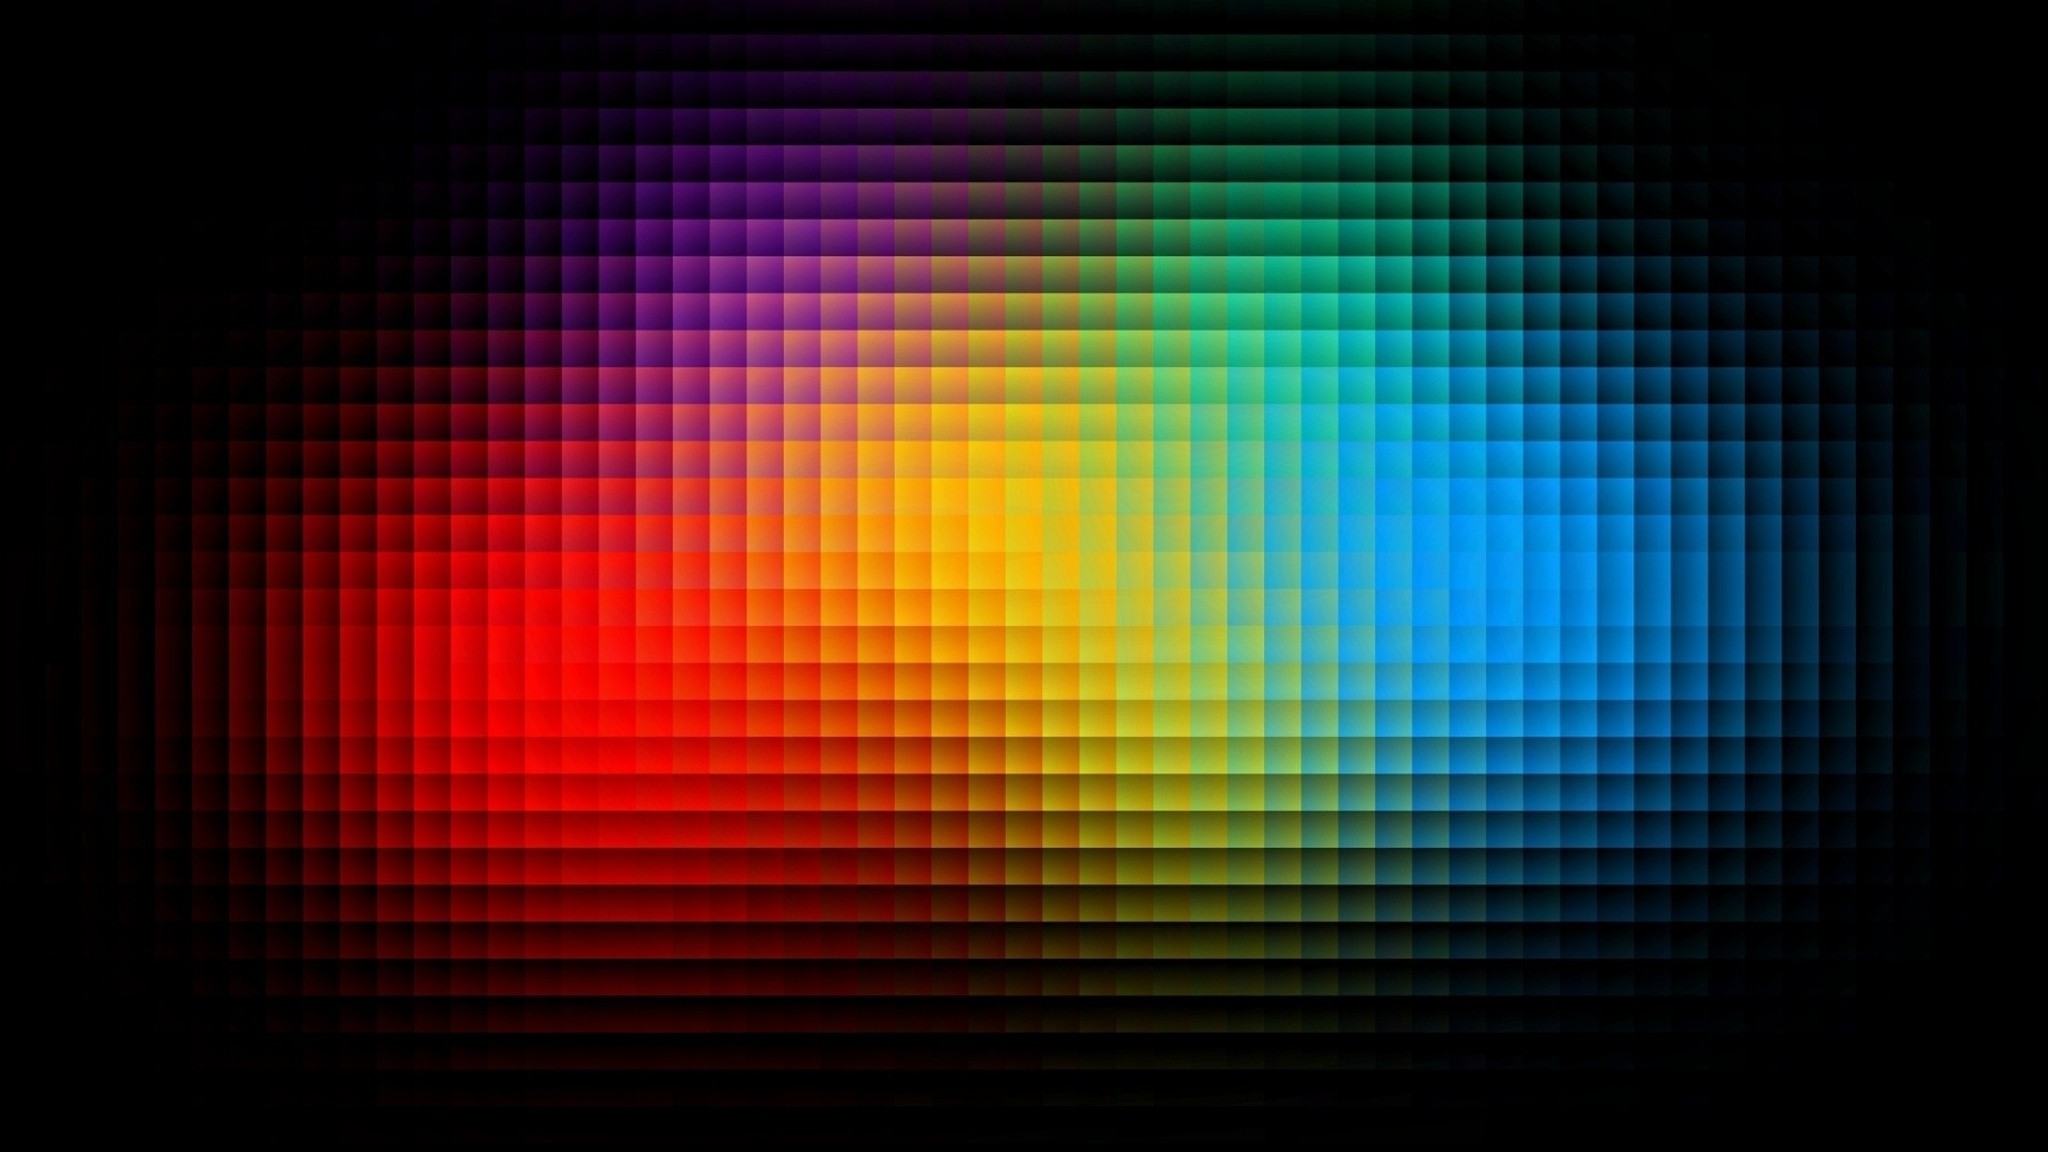 2048 X 1152 Pixels Wallpaper 90 Images